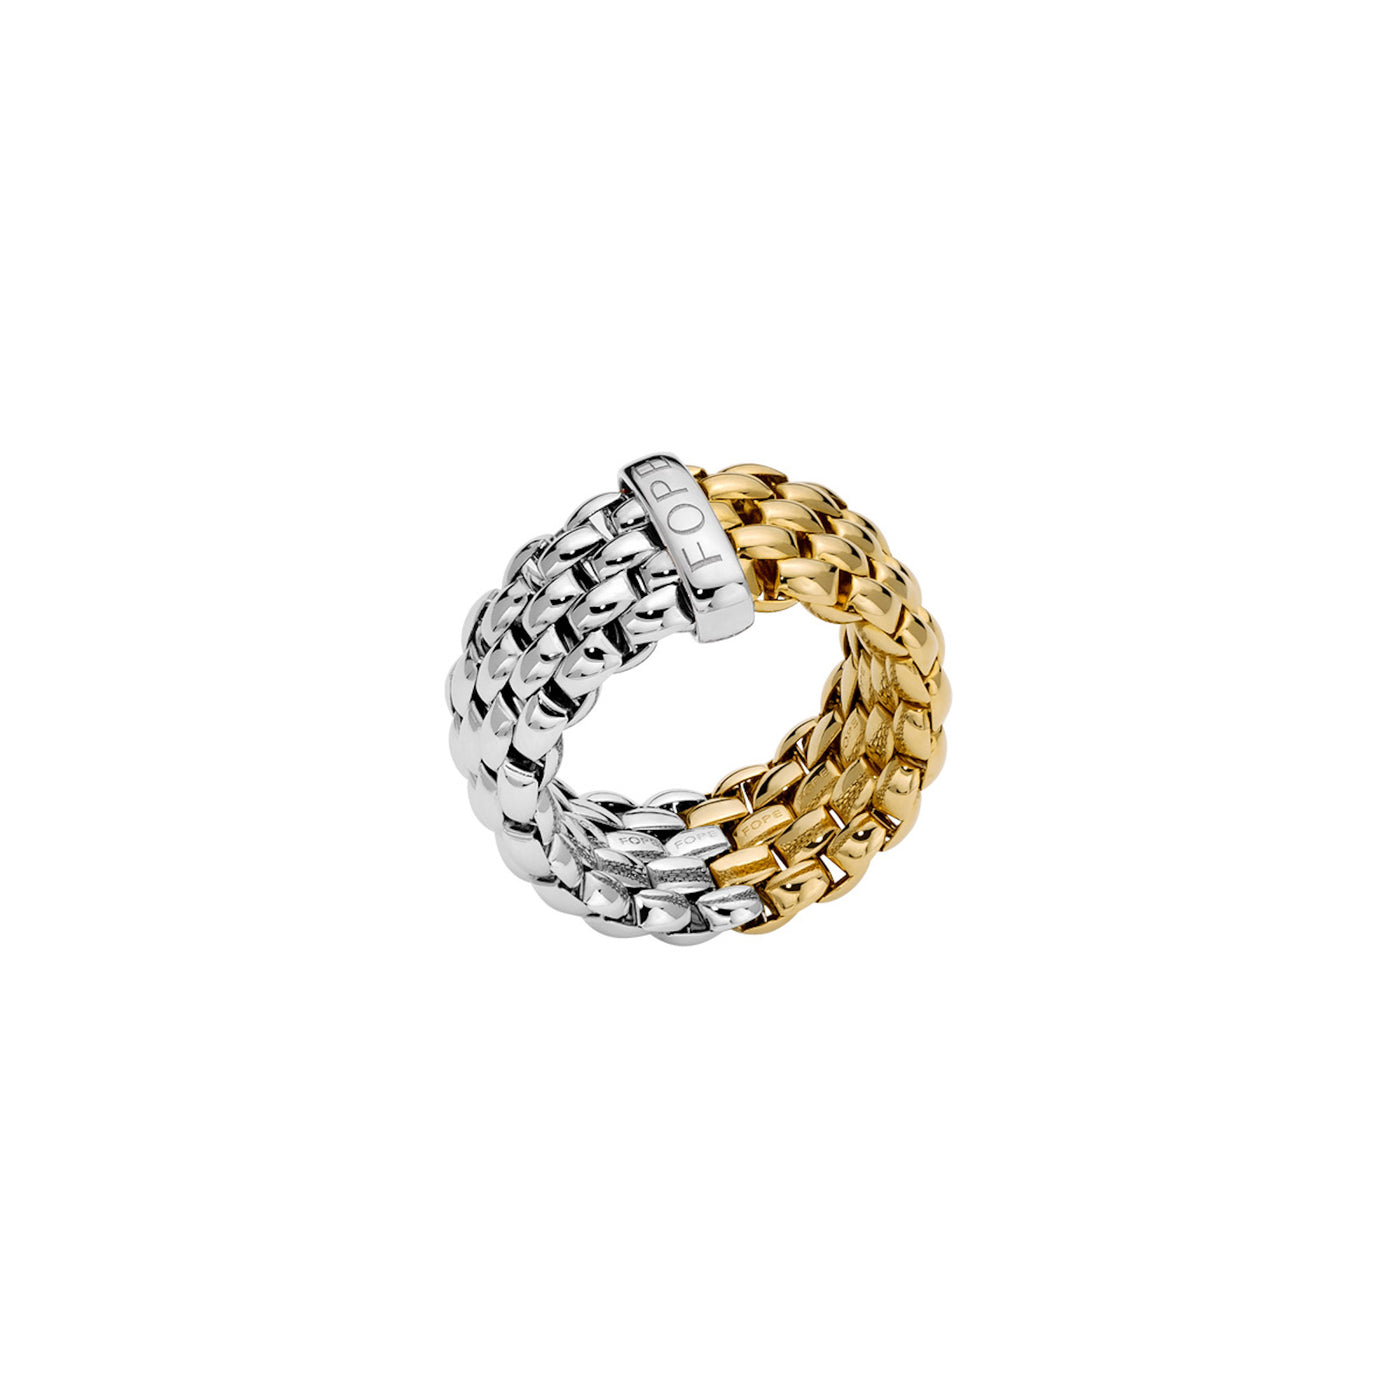 Flexibler Fope Essential Ring. Der Ring ist zu je einer Seite aus Gelb- oder Weißgold gefertigt.